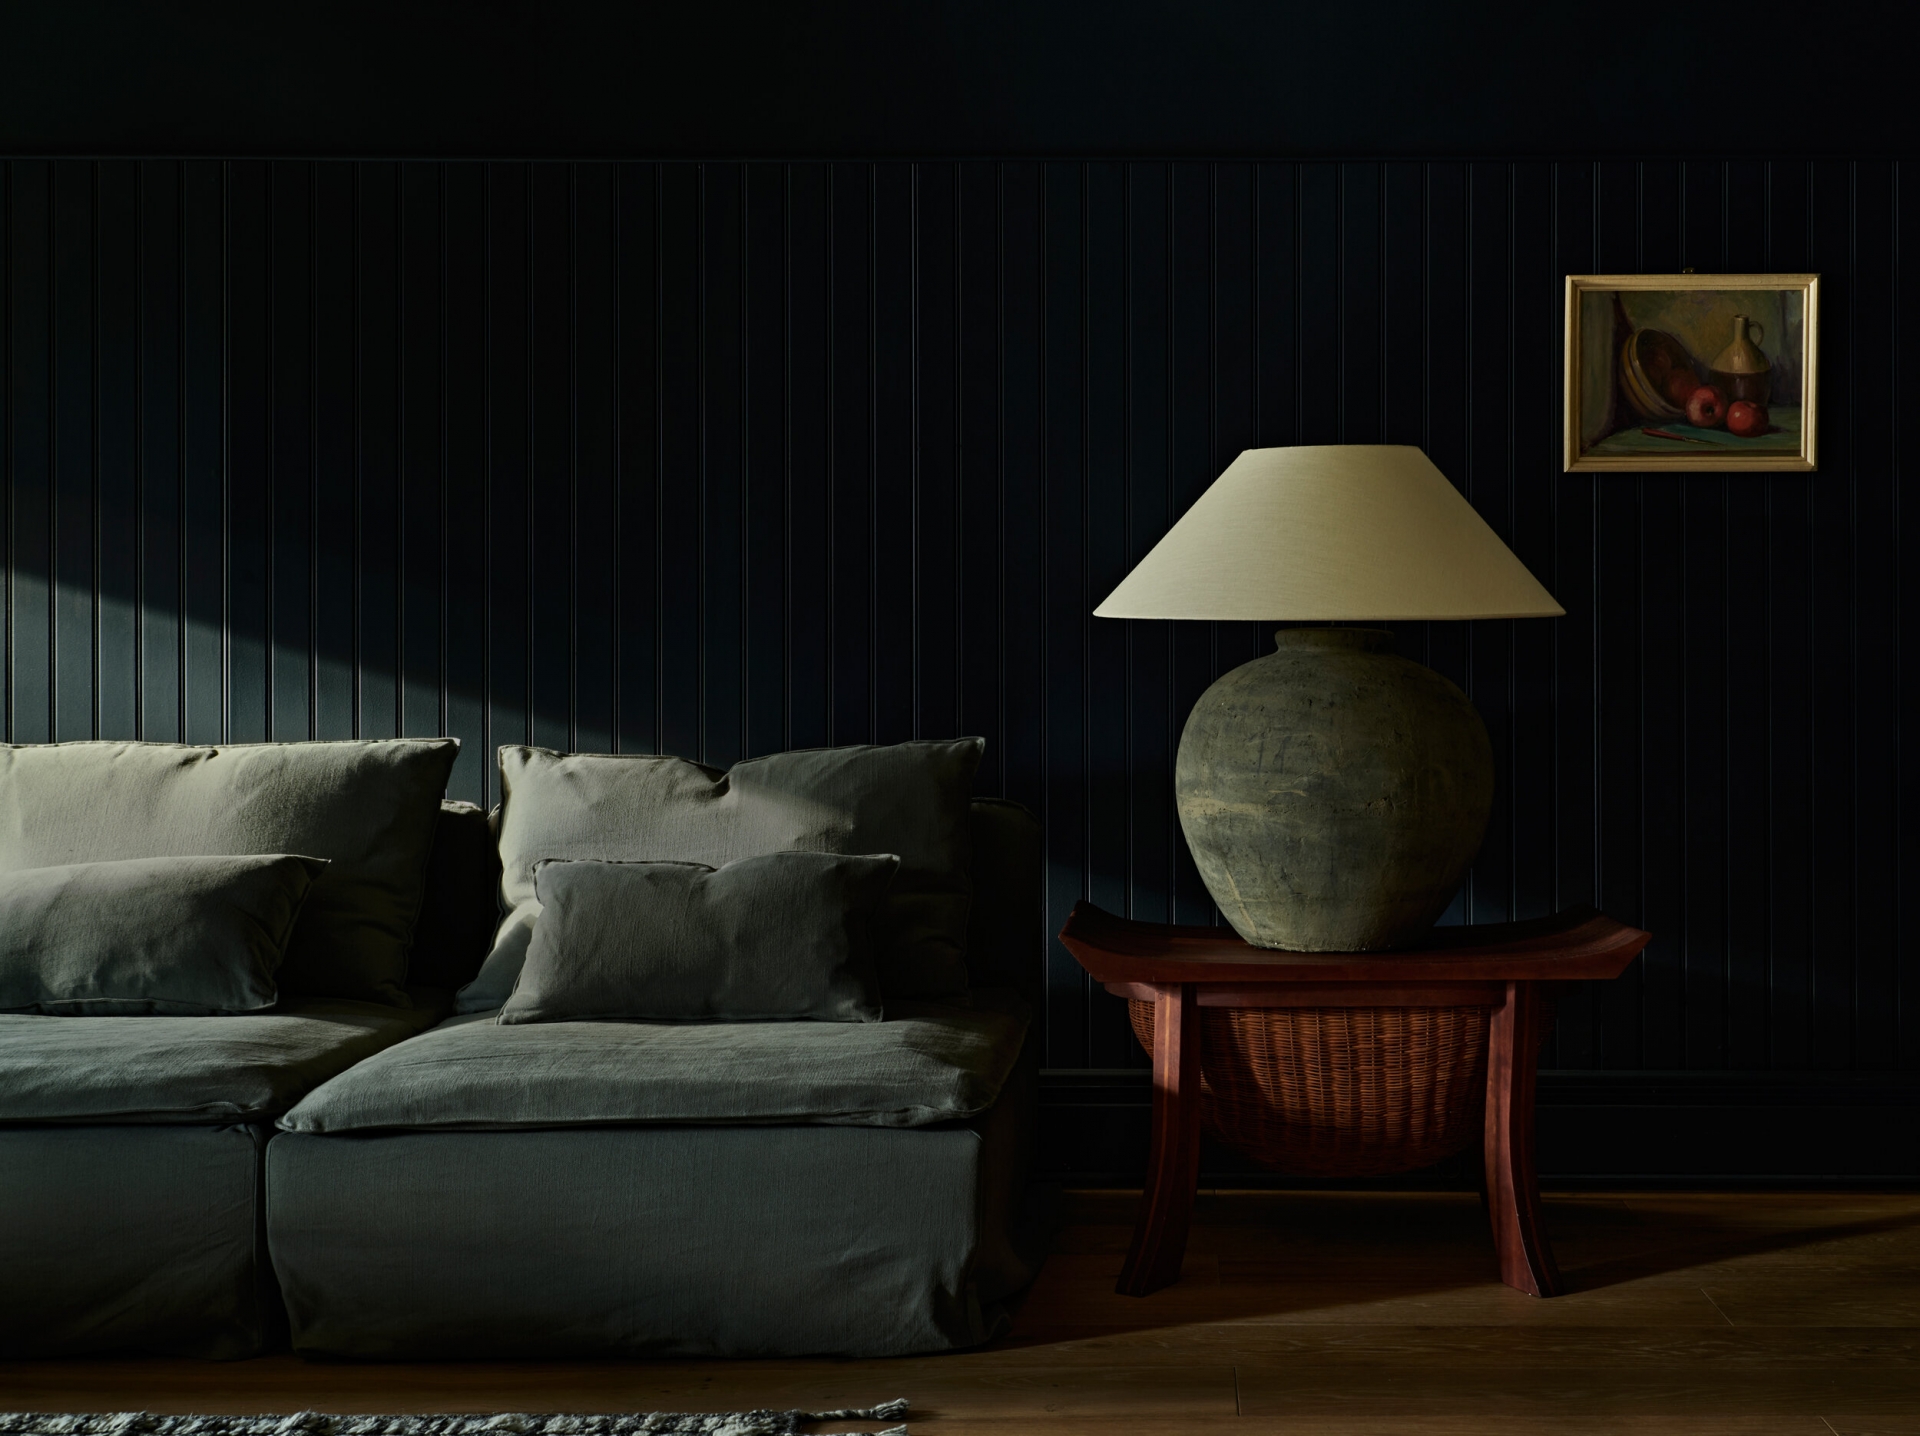 Nếu bạn là 'fan cuồng bóng đêm' thì đừng ngại ngần thể hiện sở thích bằng cách sơn những tấm ốp tường gỗ với màu xanh rêu đậm. Khi ánh sáng từ ô cửa chiếu vào, căn phòng toát lên một vẻ rất nghệ thuật.